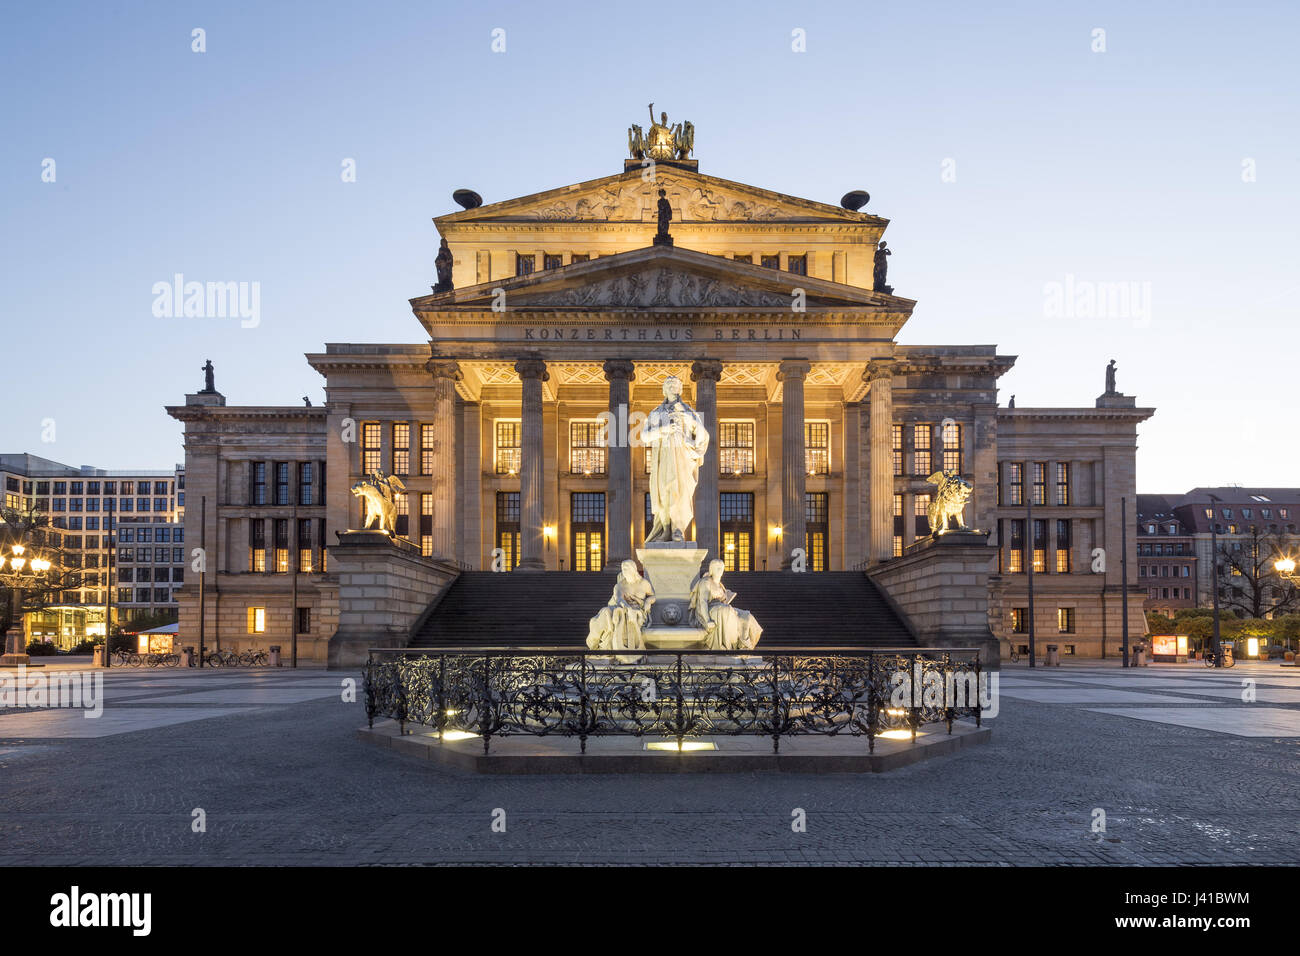 Statue de Schiller, avec salle de concert, le Gendarmenmarkt, Berlin, Allemagne Banque D'Images